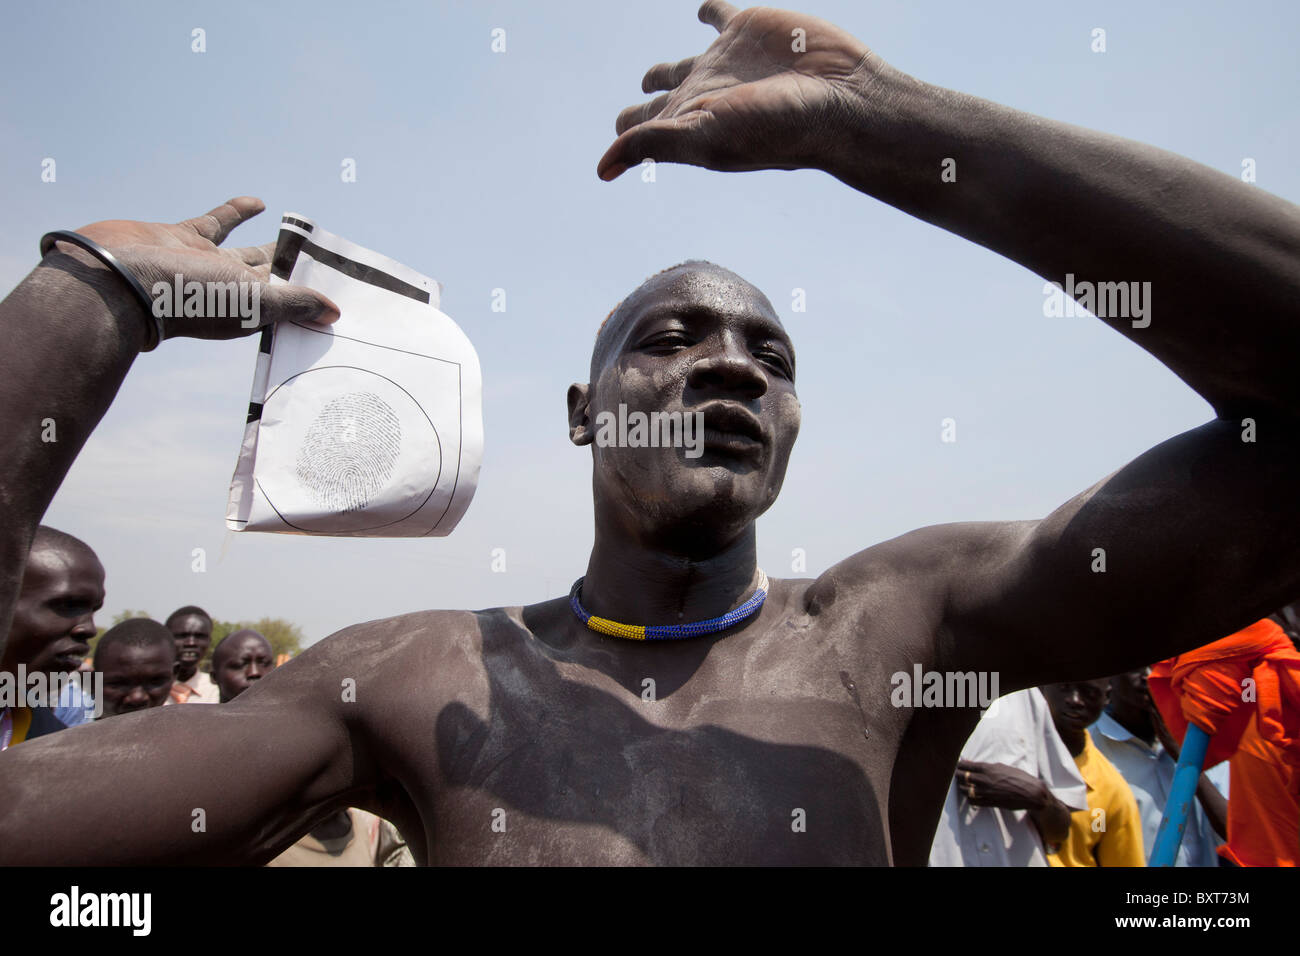 Danseurs tribaux prendre part le dernier événement de l'indépendance de Juba d'encourager les gens à s'inscrire pour le 9 janvier 2011 référendum. Banque D'Images